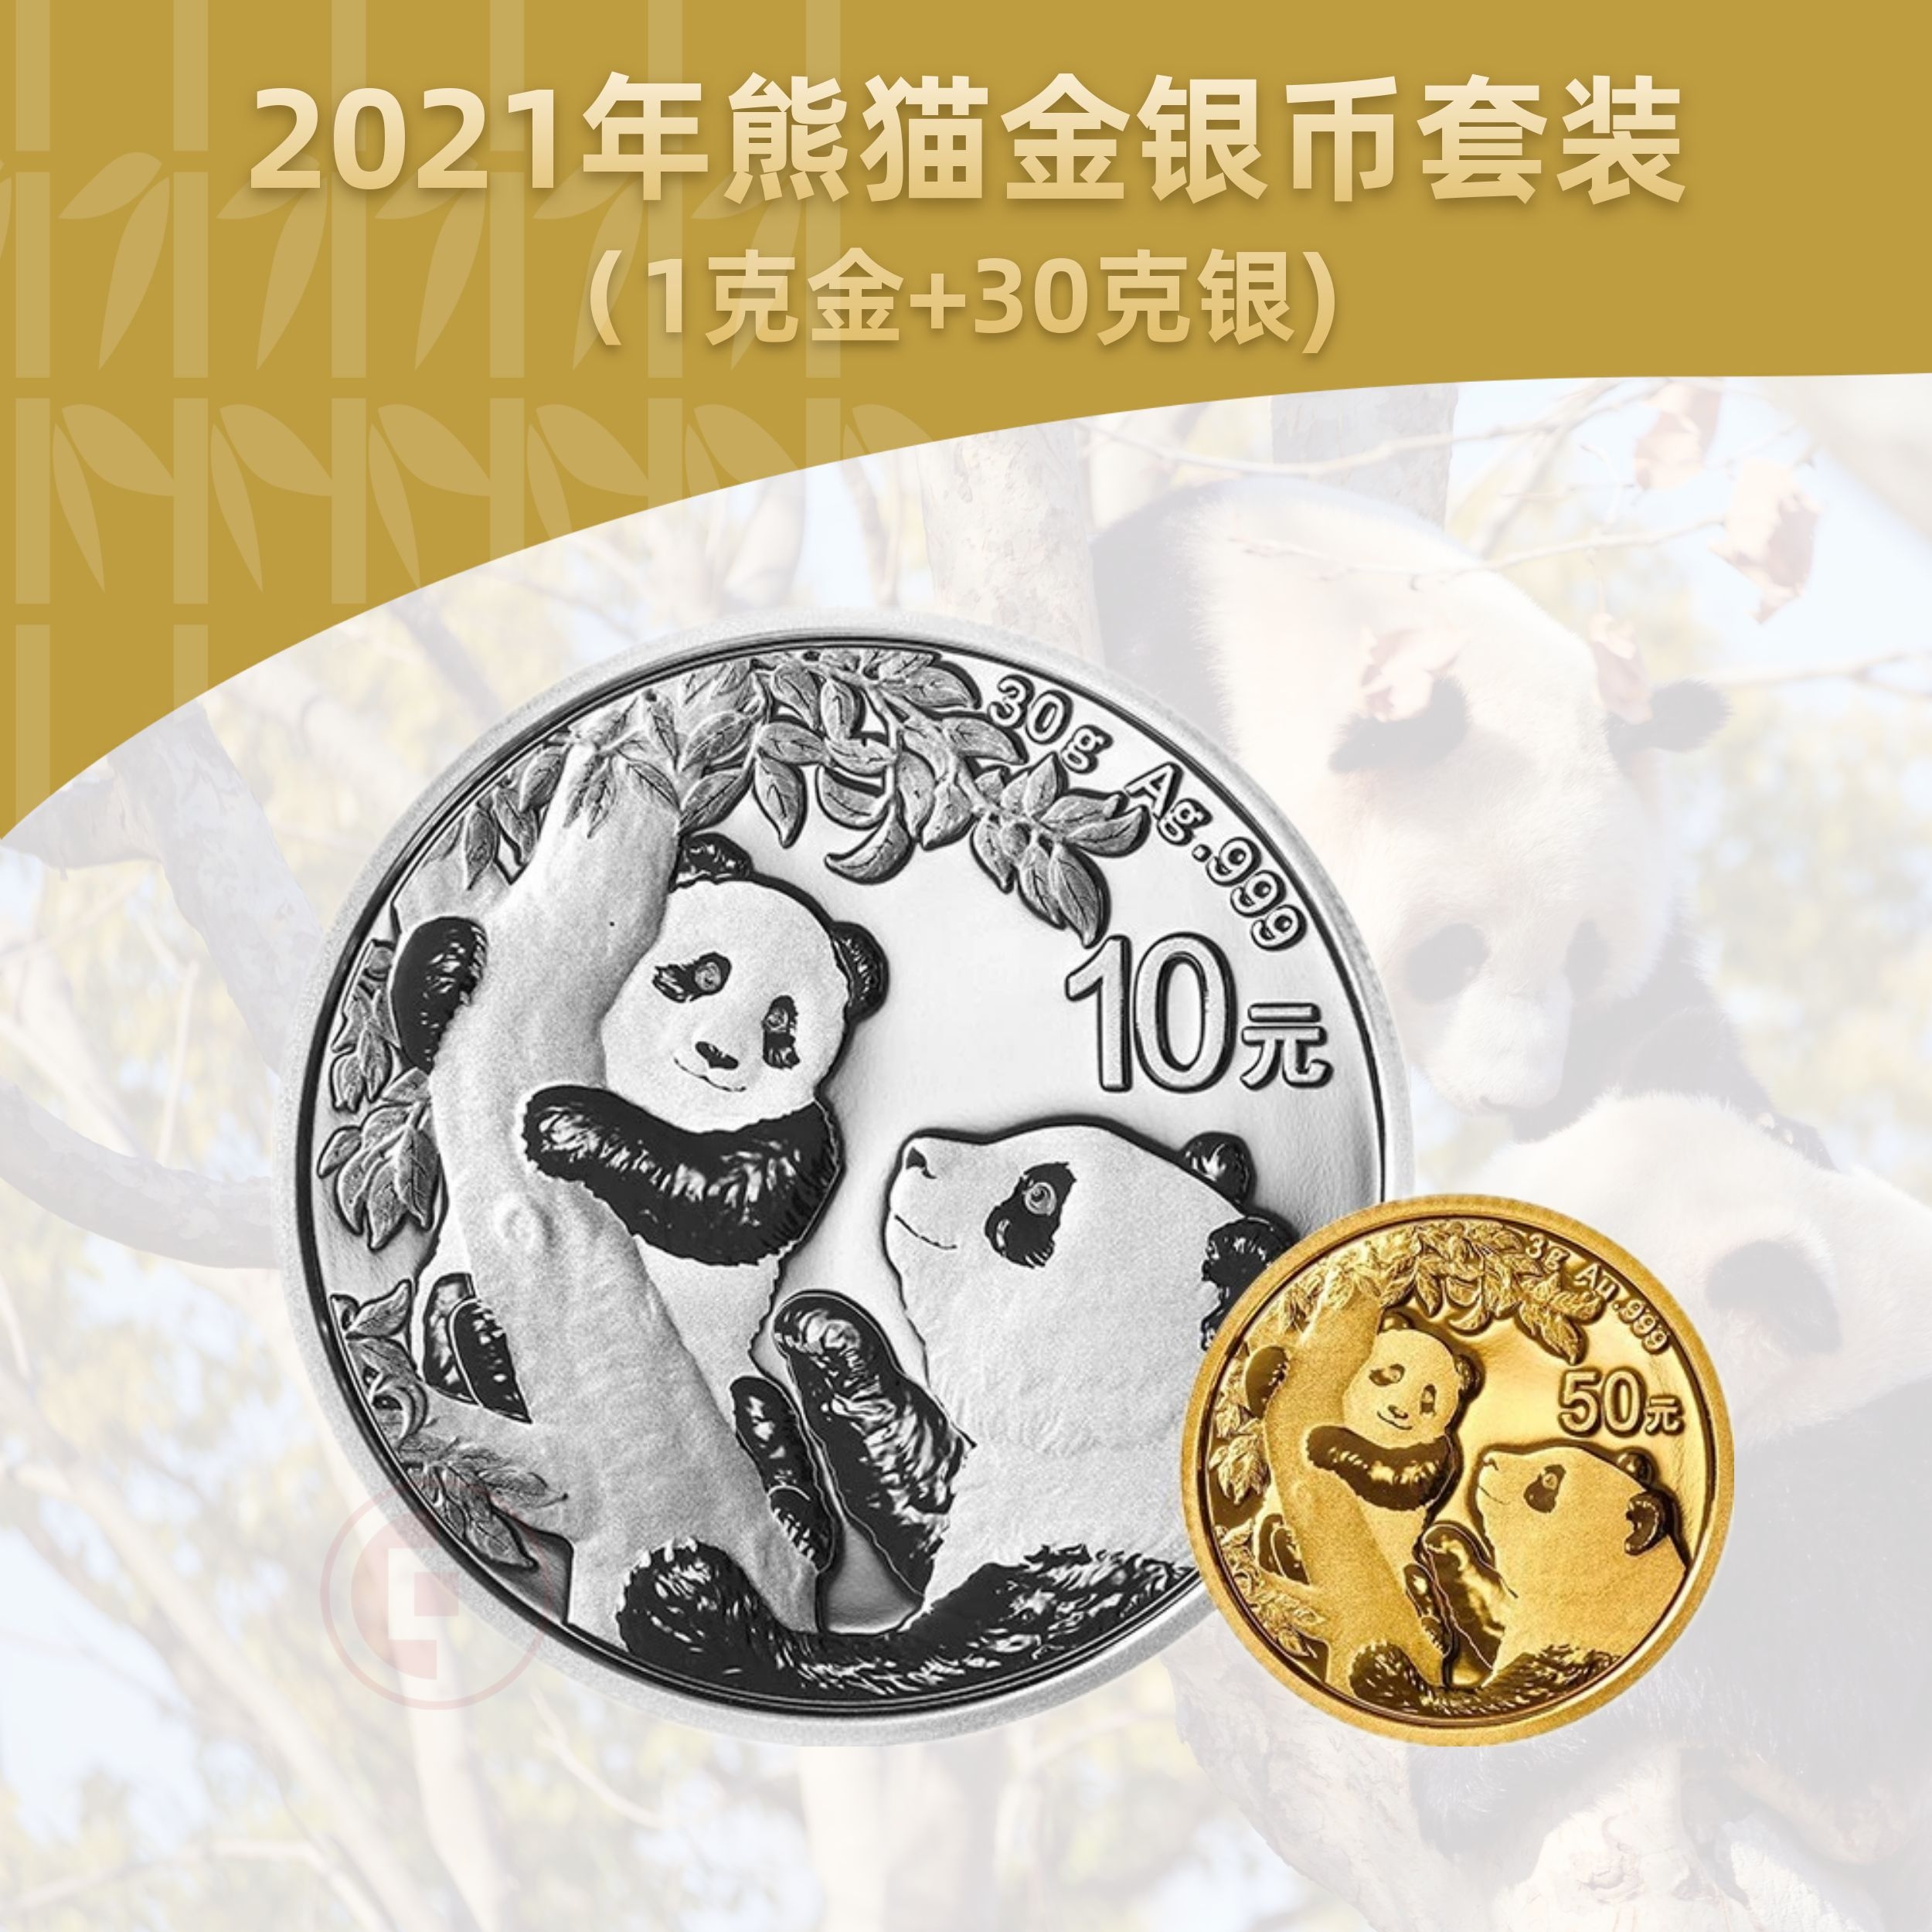 2021熊猫金银币套装  (3克金+30克银)